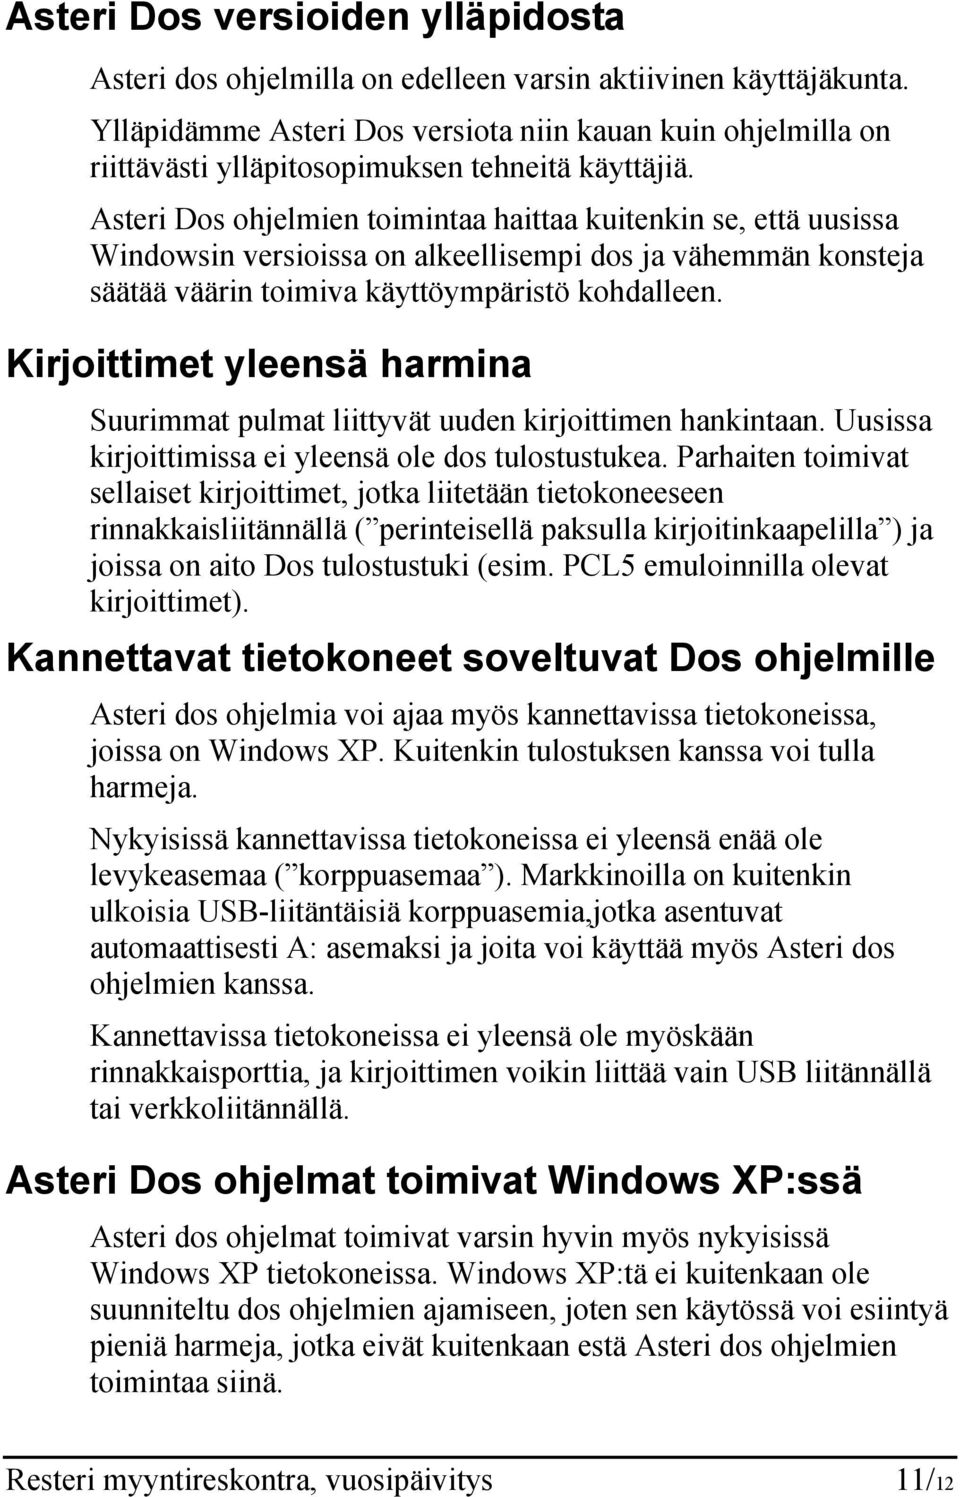 Asteri Dos ohjelmien toimintaa haittaa kuitenkin se, että uusissa Windowsin versioissa on alkeellisempi dos ja vähemmän konsteja säätää väärin toimiva käyttöympäristö kohdalleen.